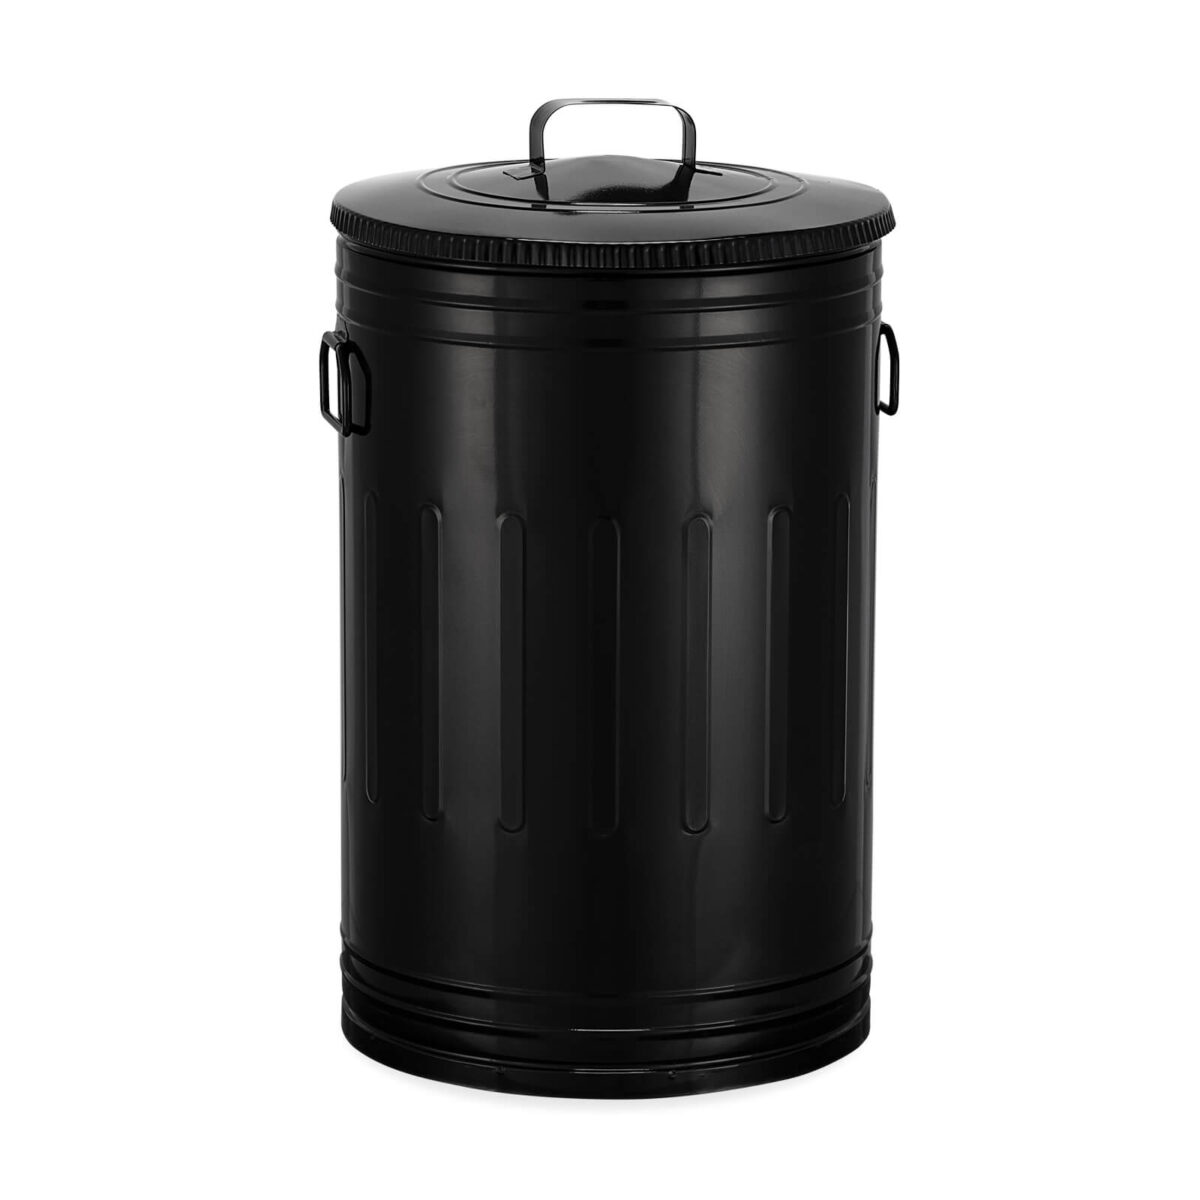 Lixeira 50 litros preta lata de lixo americana preta